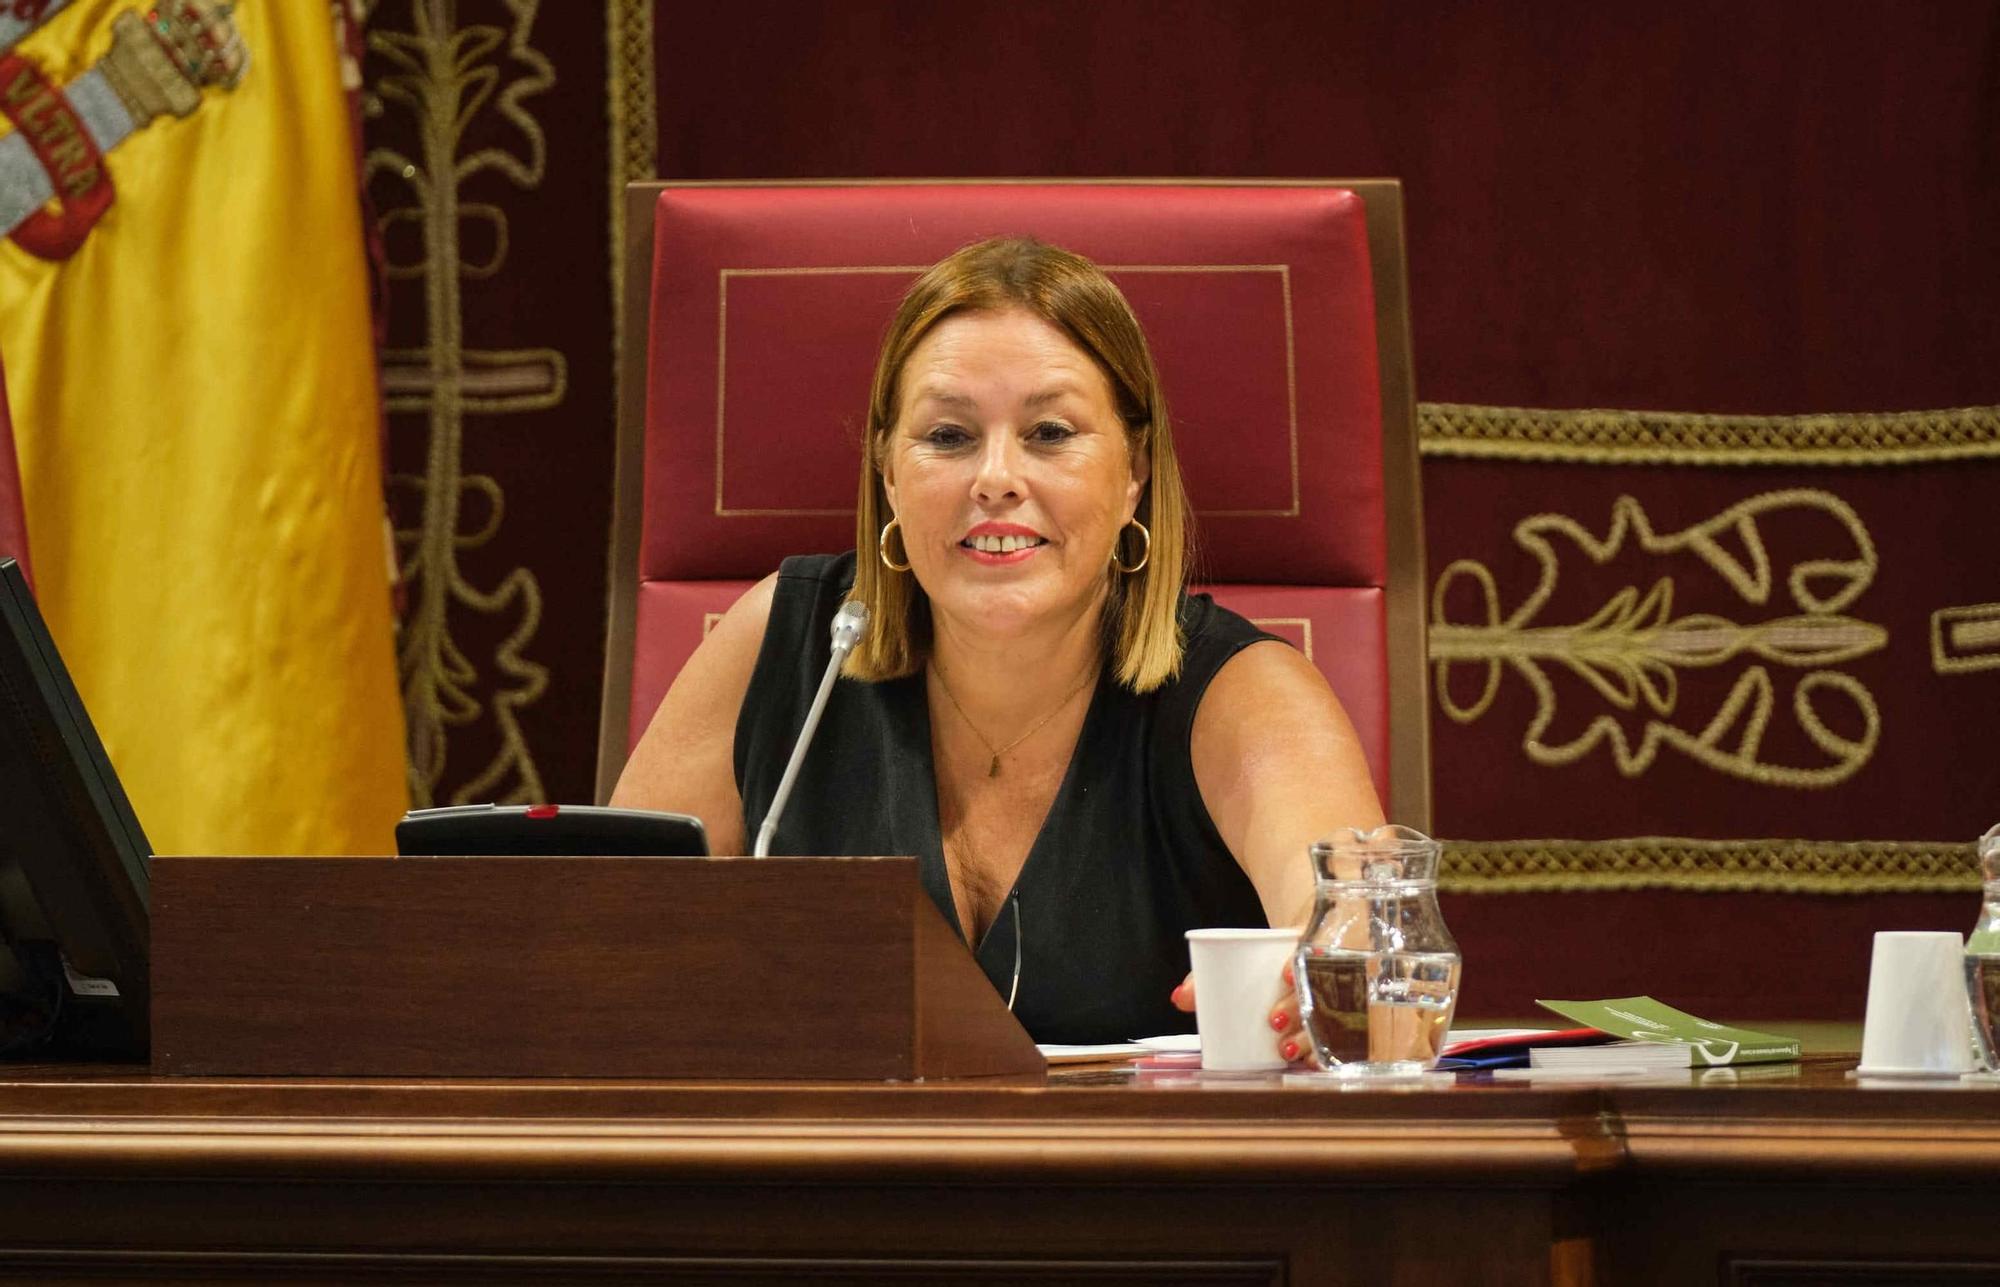 Primera sesión plenaria del Parlamento de Canarias